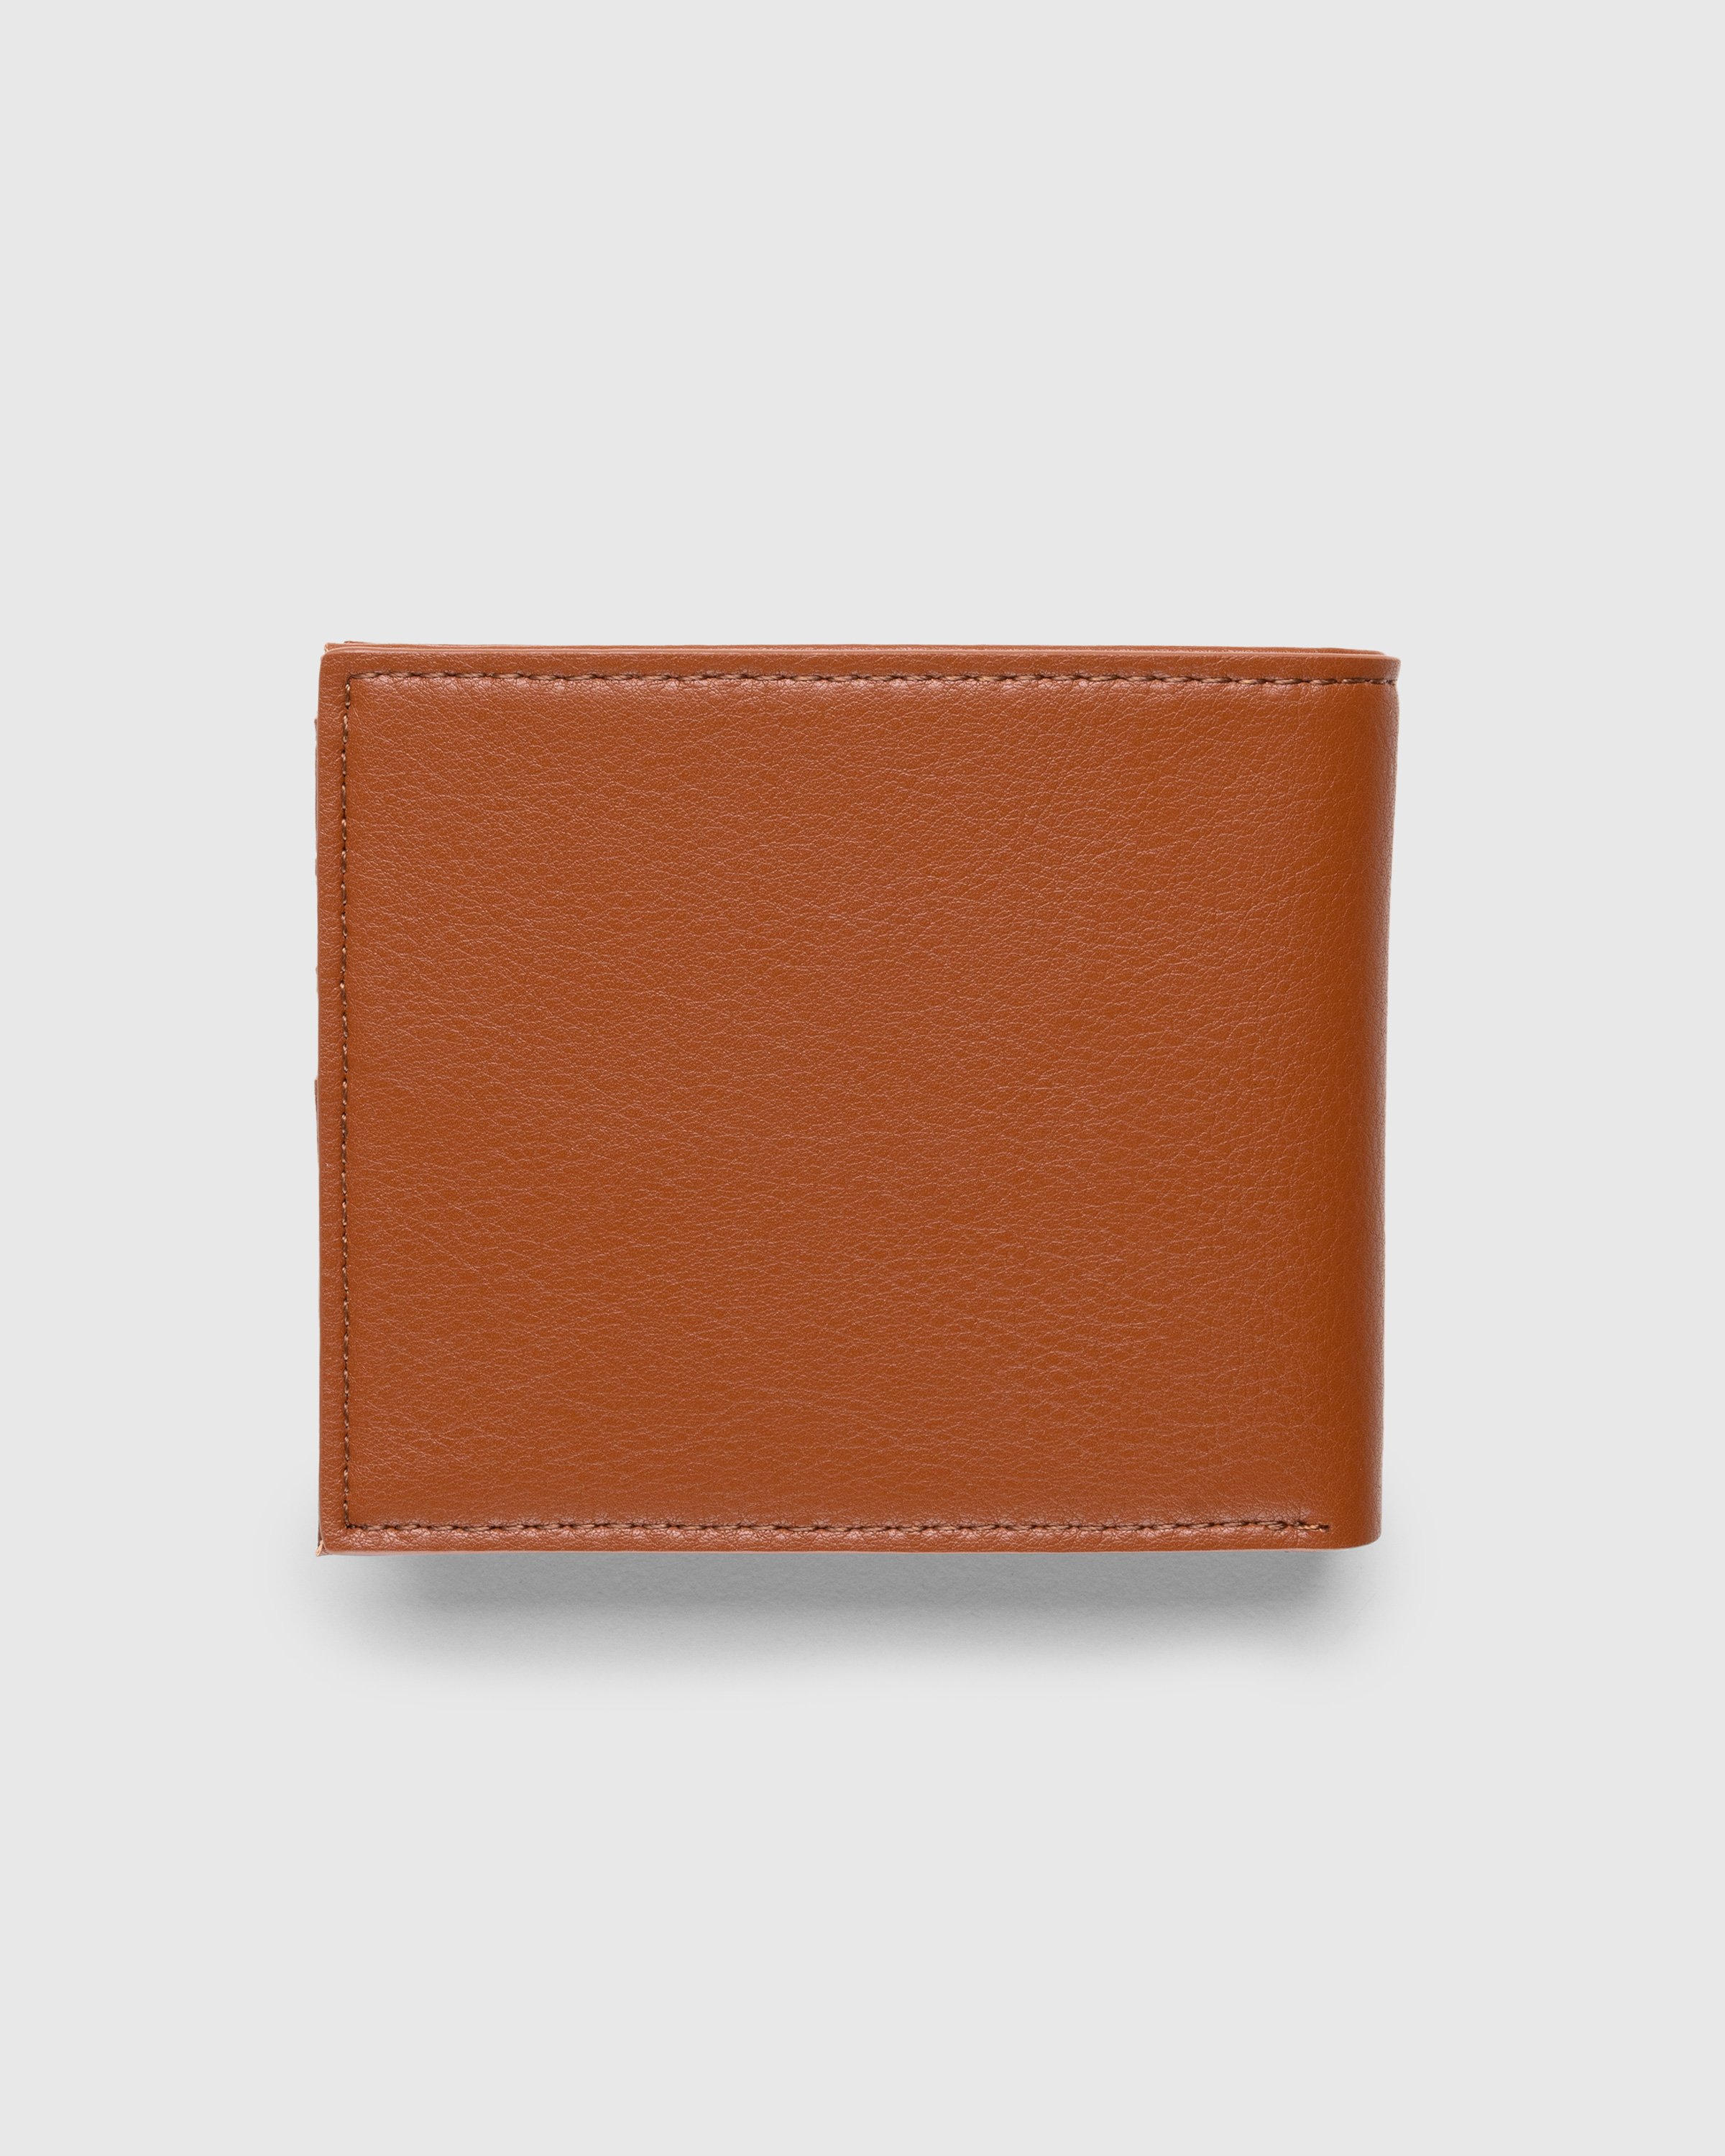 Carhartt WIP - Bifold Wallet Cognac - Accessories - Brown - Image 2